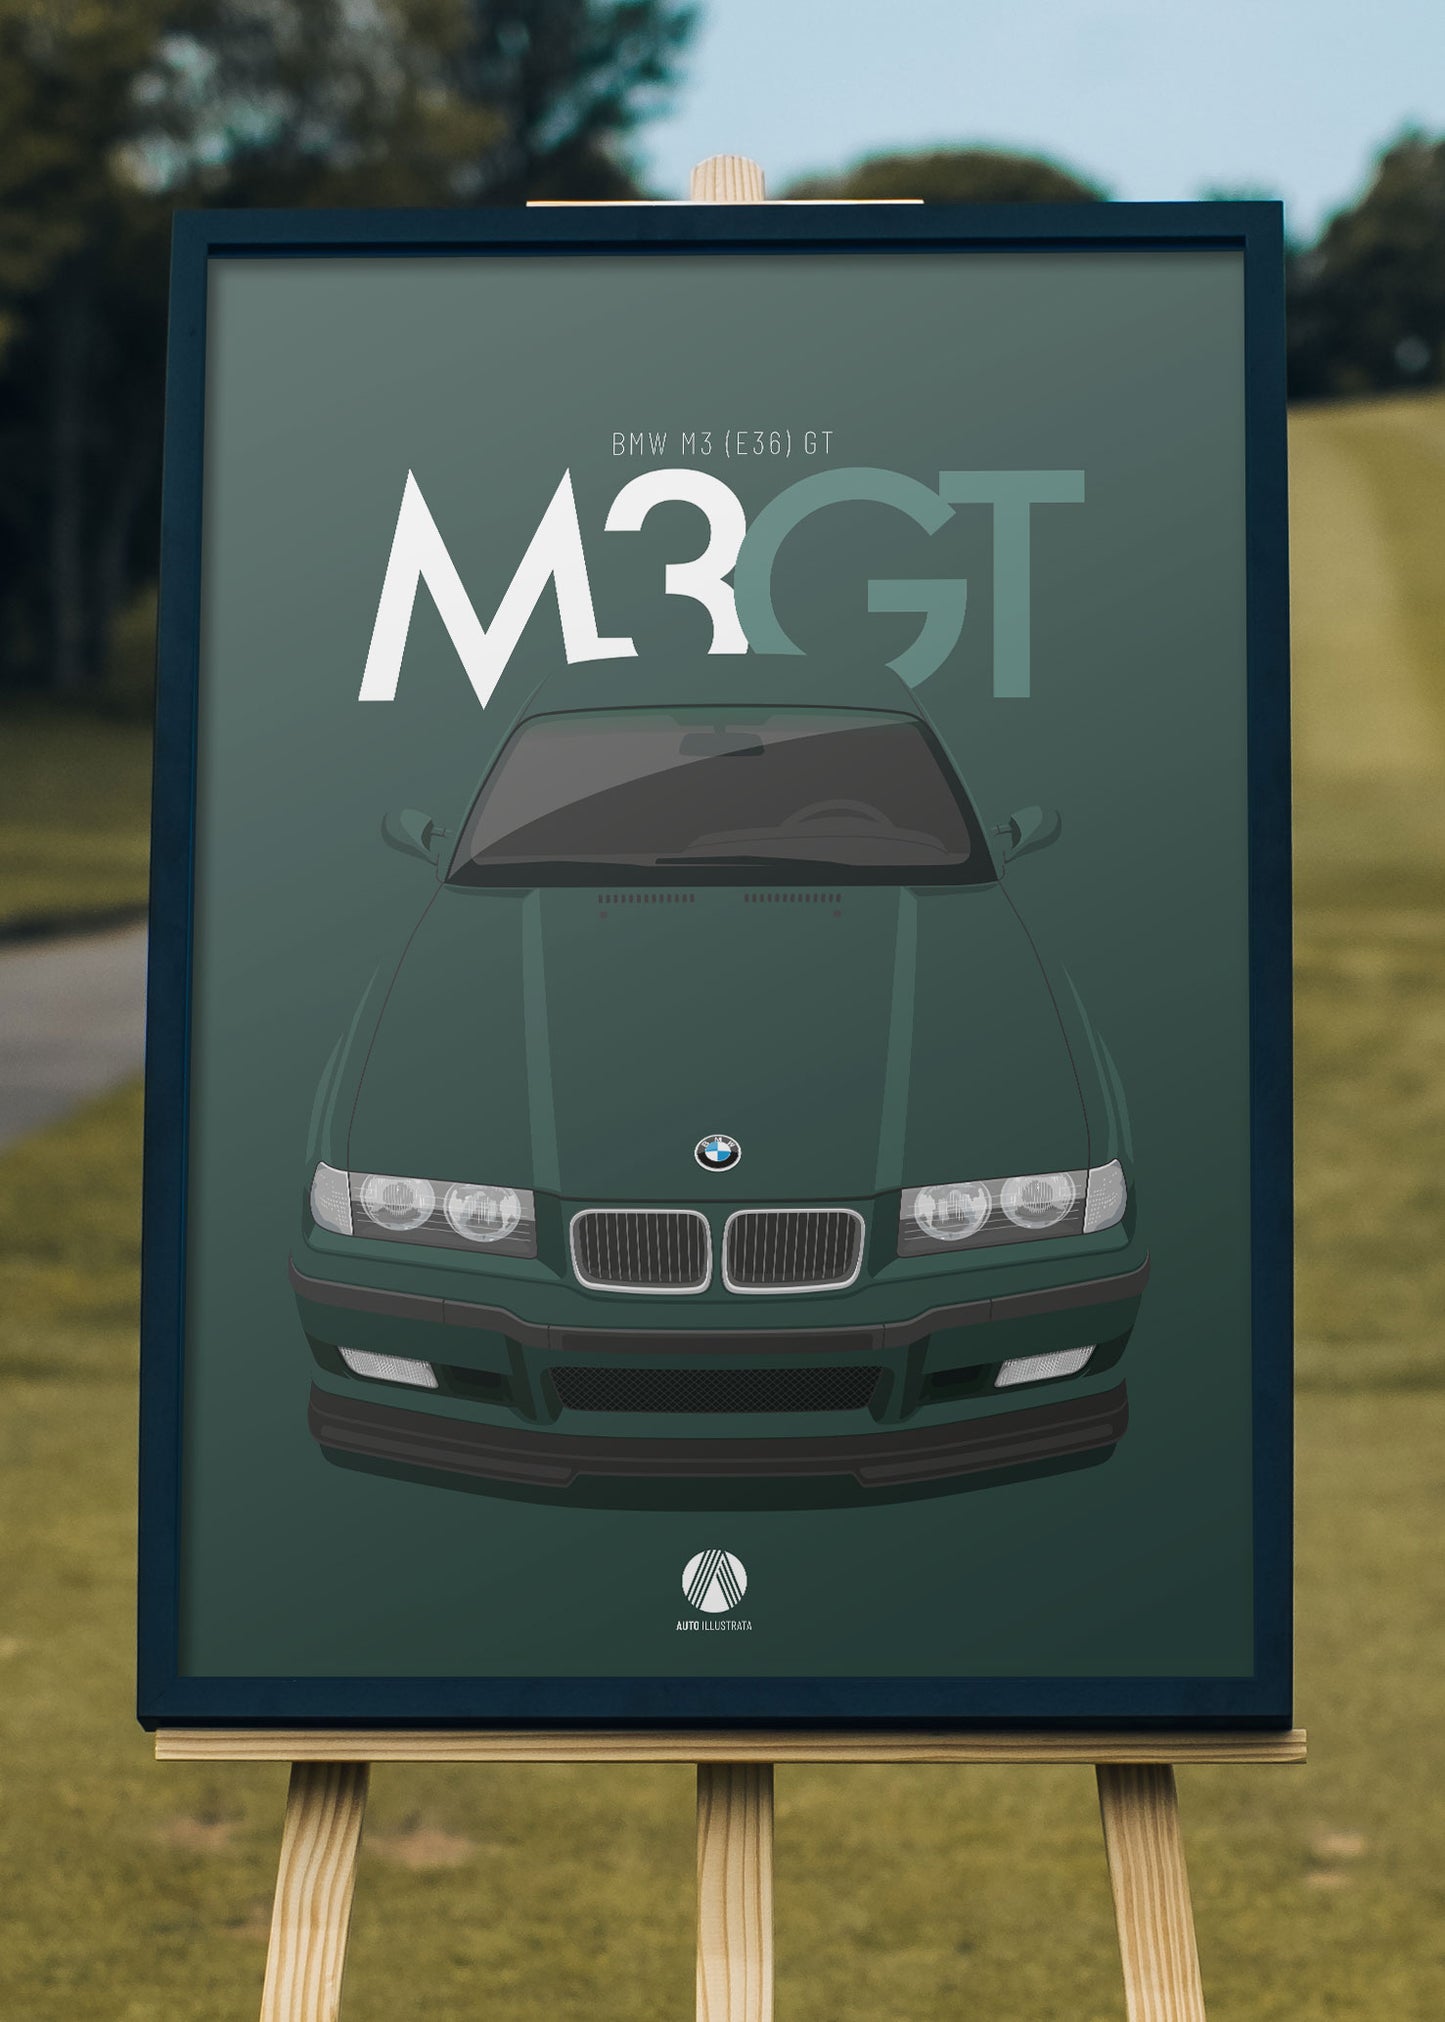 1995 BMW E36 M3 GT - poster print